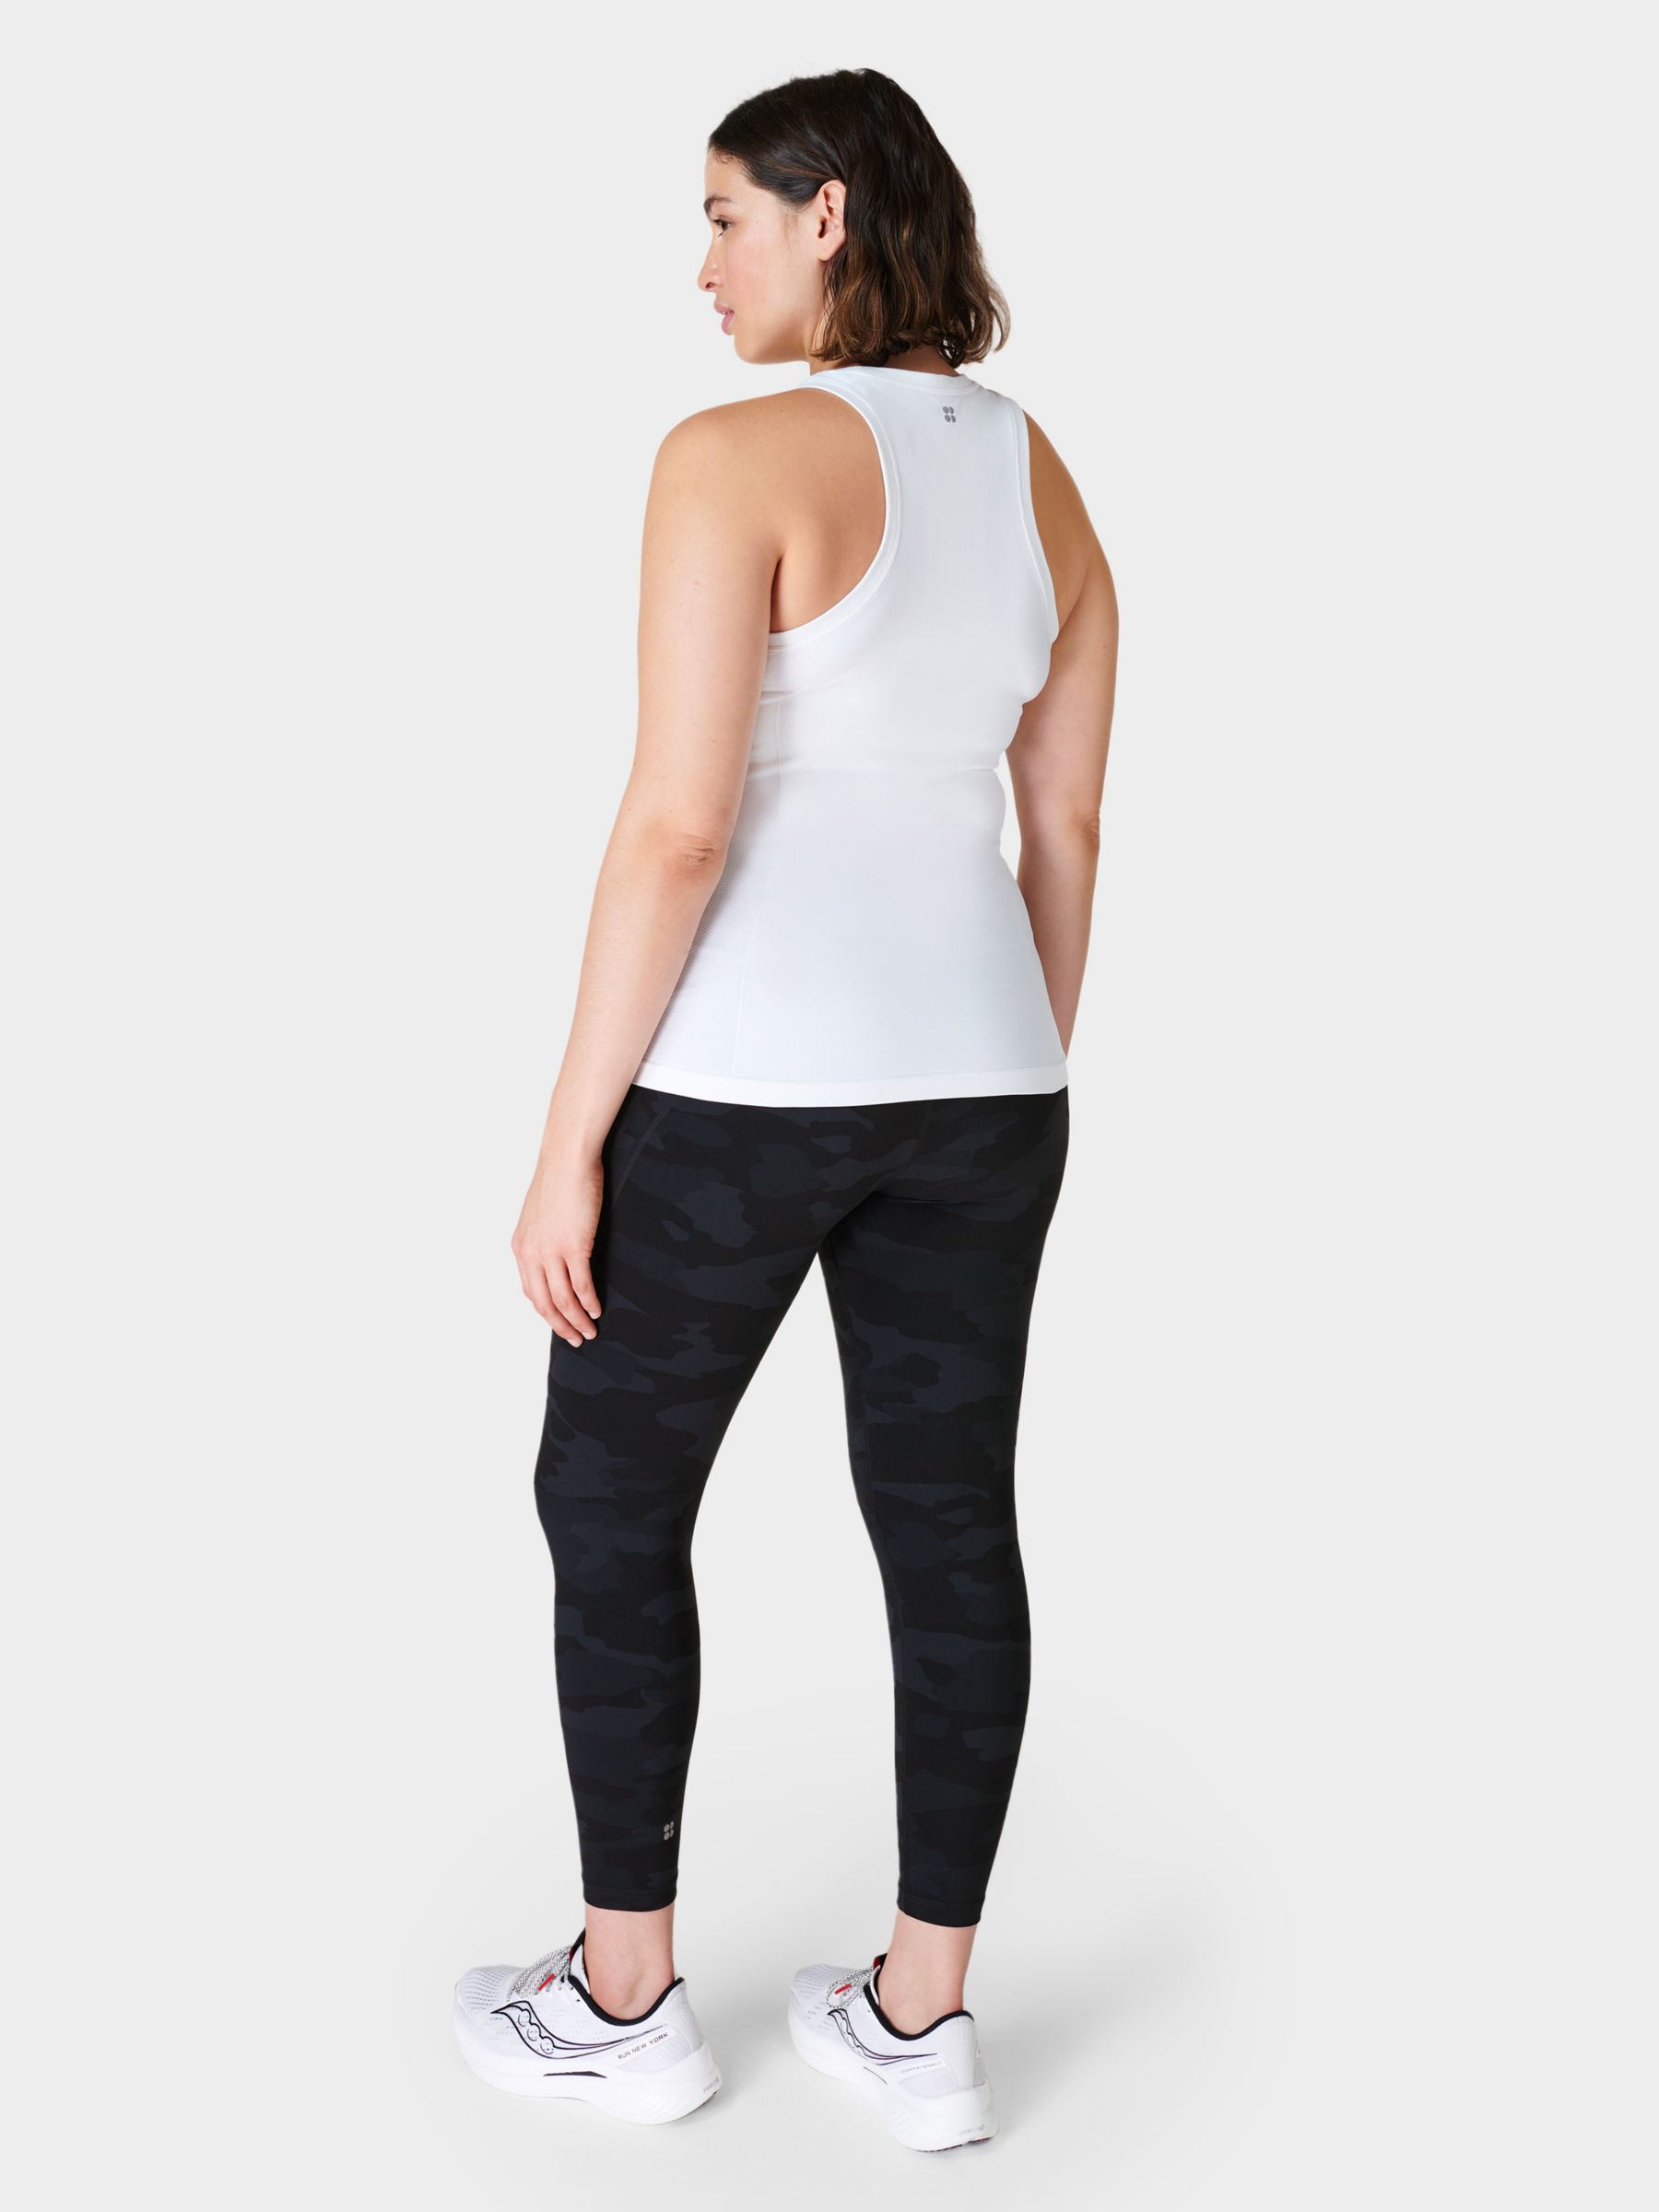 Lole Womens Yoga Pants Leggings Camo Gray Medium Running Full Length 